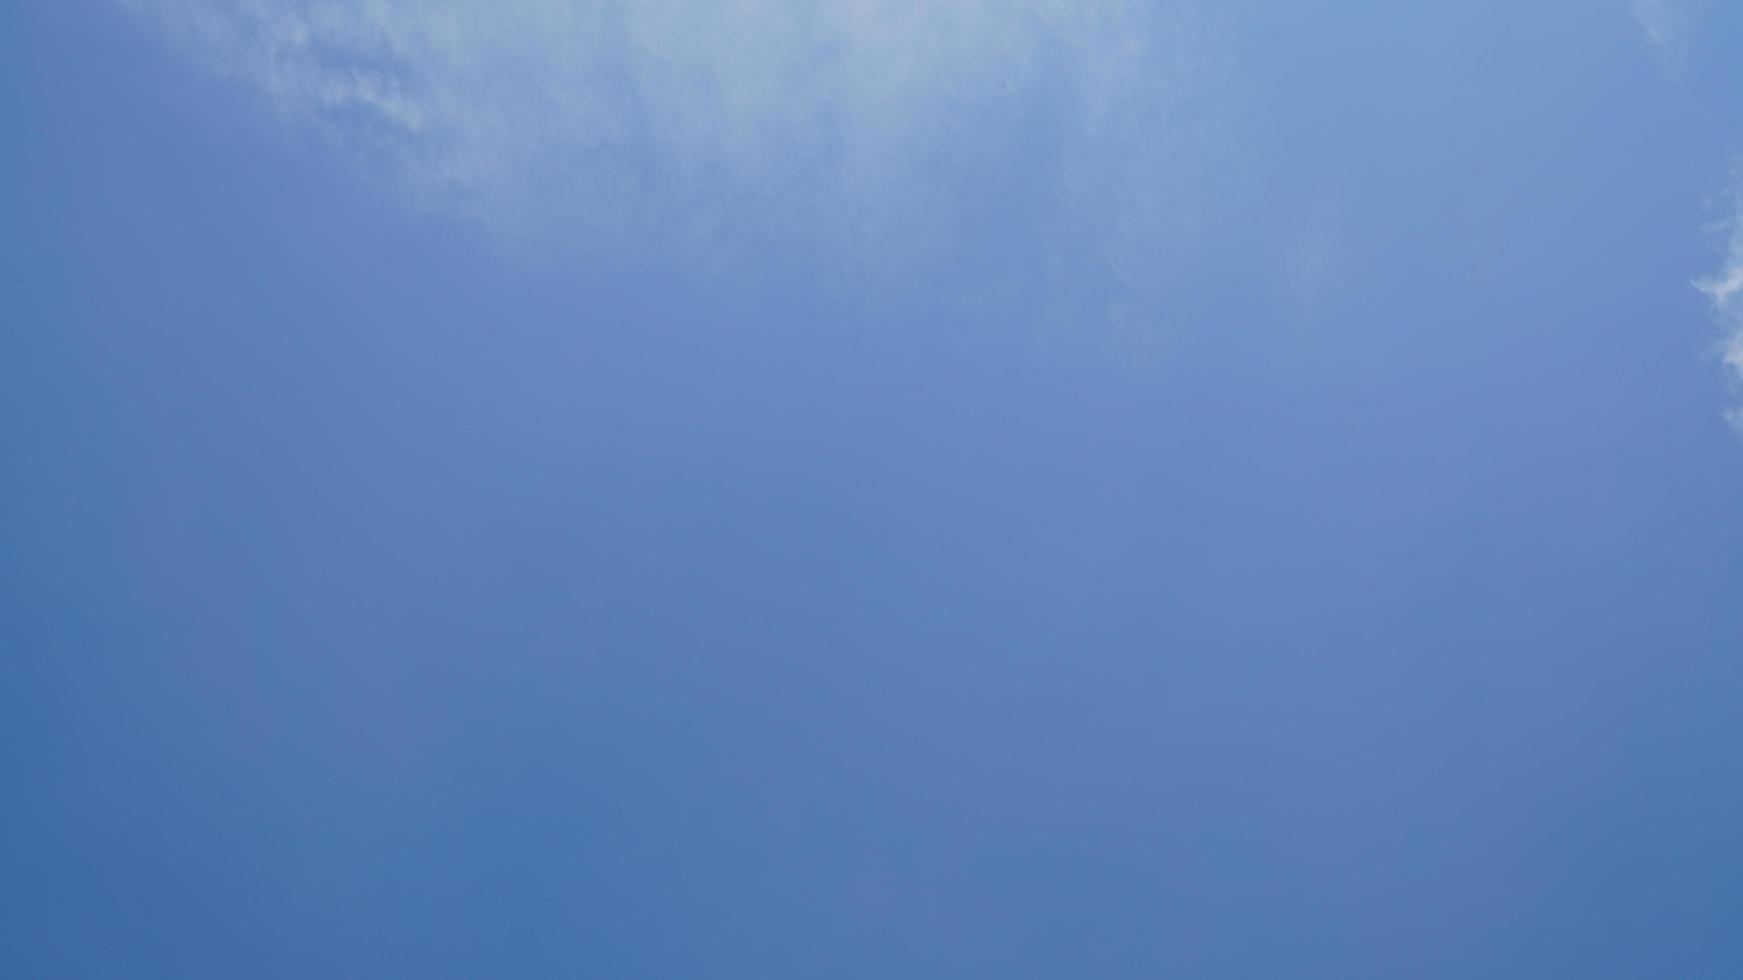 nube blanca y fondo de cielo azul con espacio de copia foto